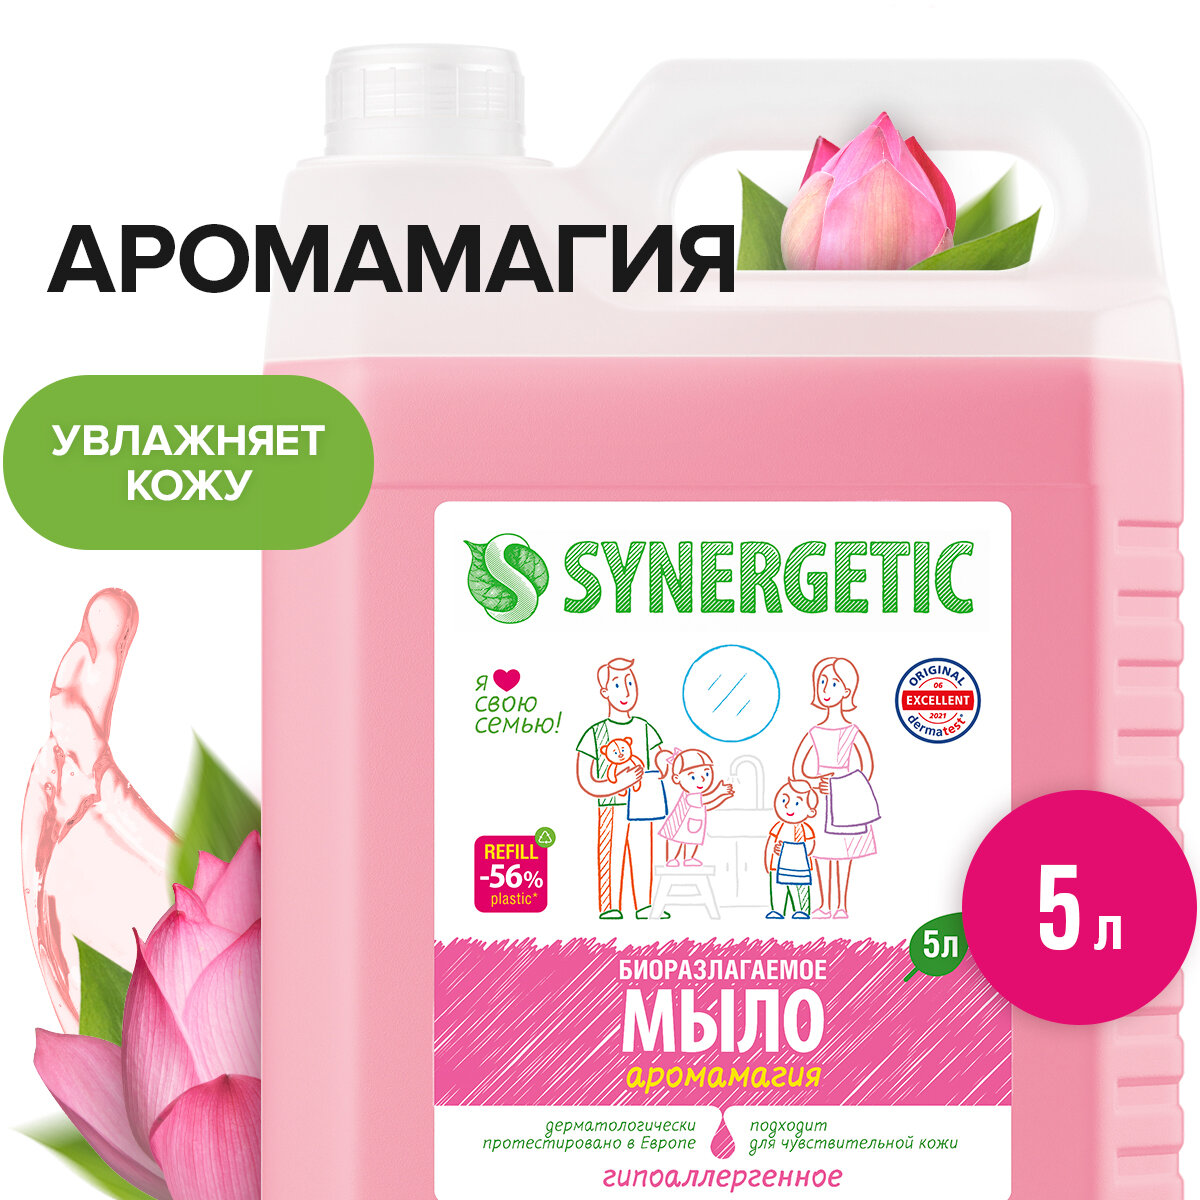 Жидкое мыло SYNERGETIC "Аромамагия" с эффектом увлажнения, гипоаллергенное, 5л (литров)